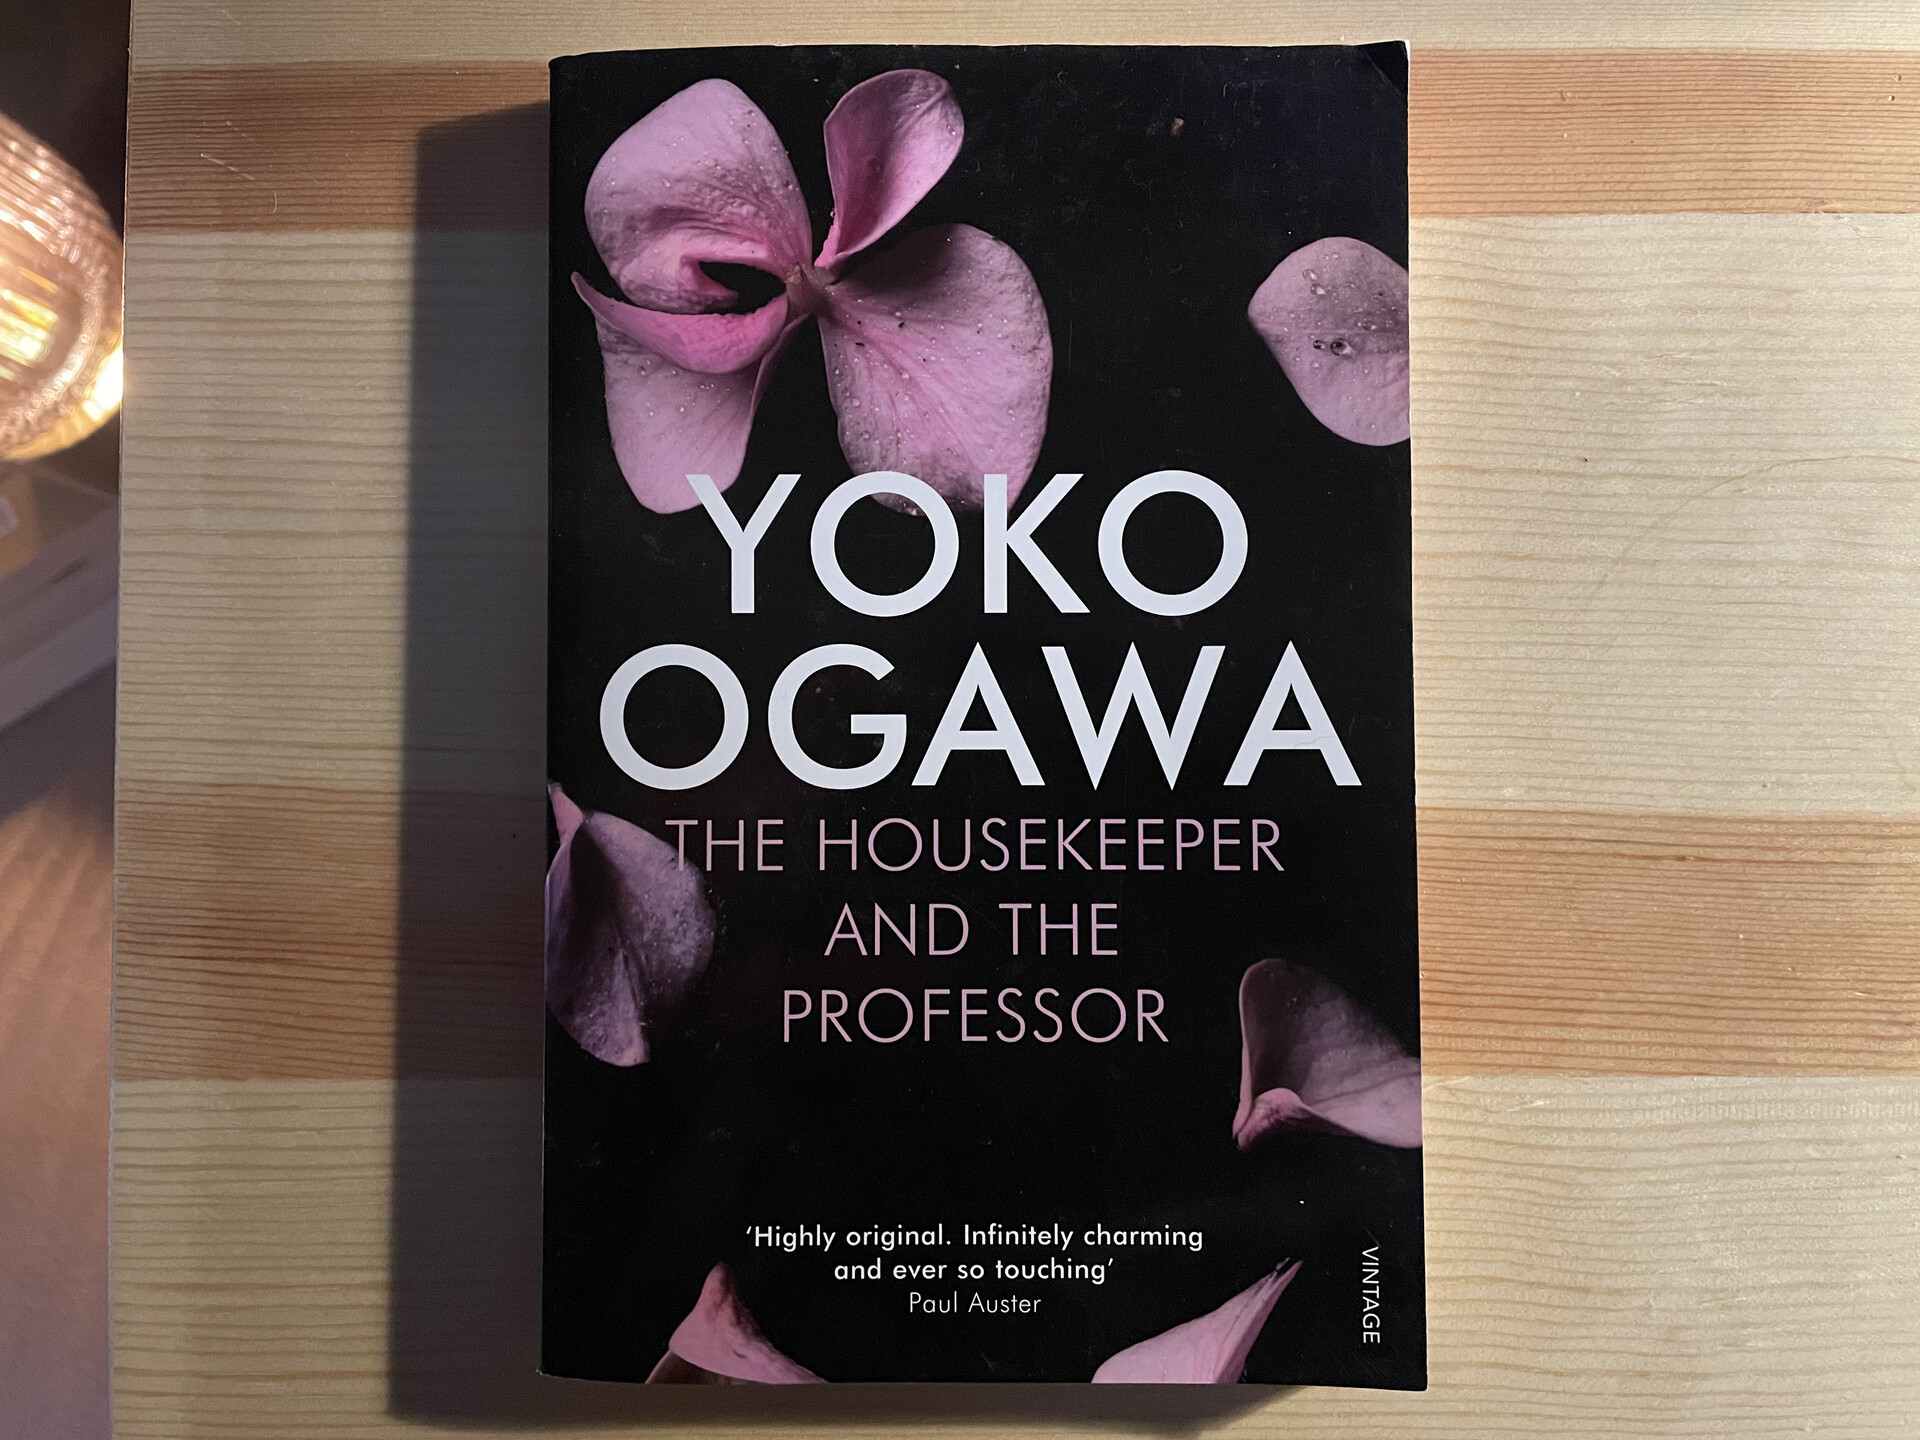 The Housekeeper and the Professor, by Yoko Ogawa